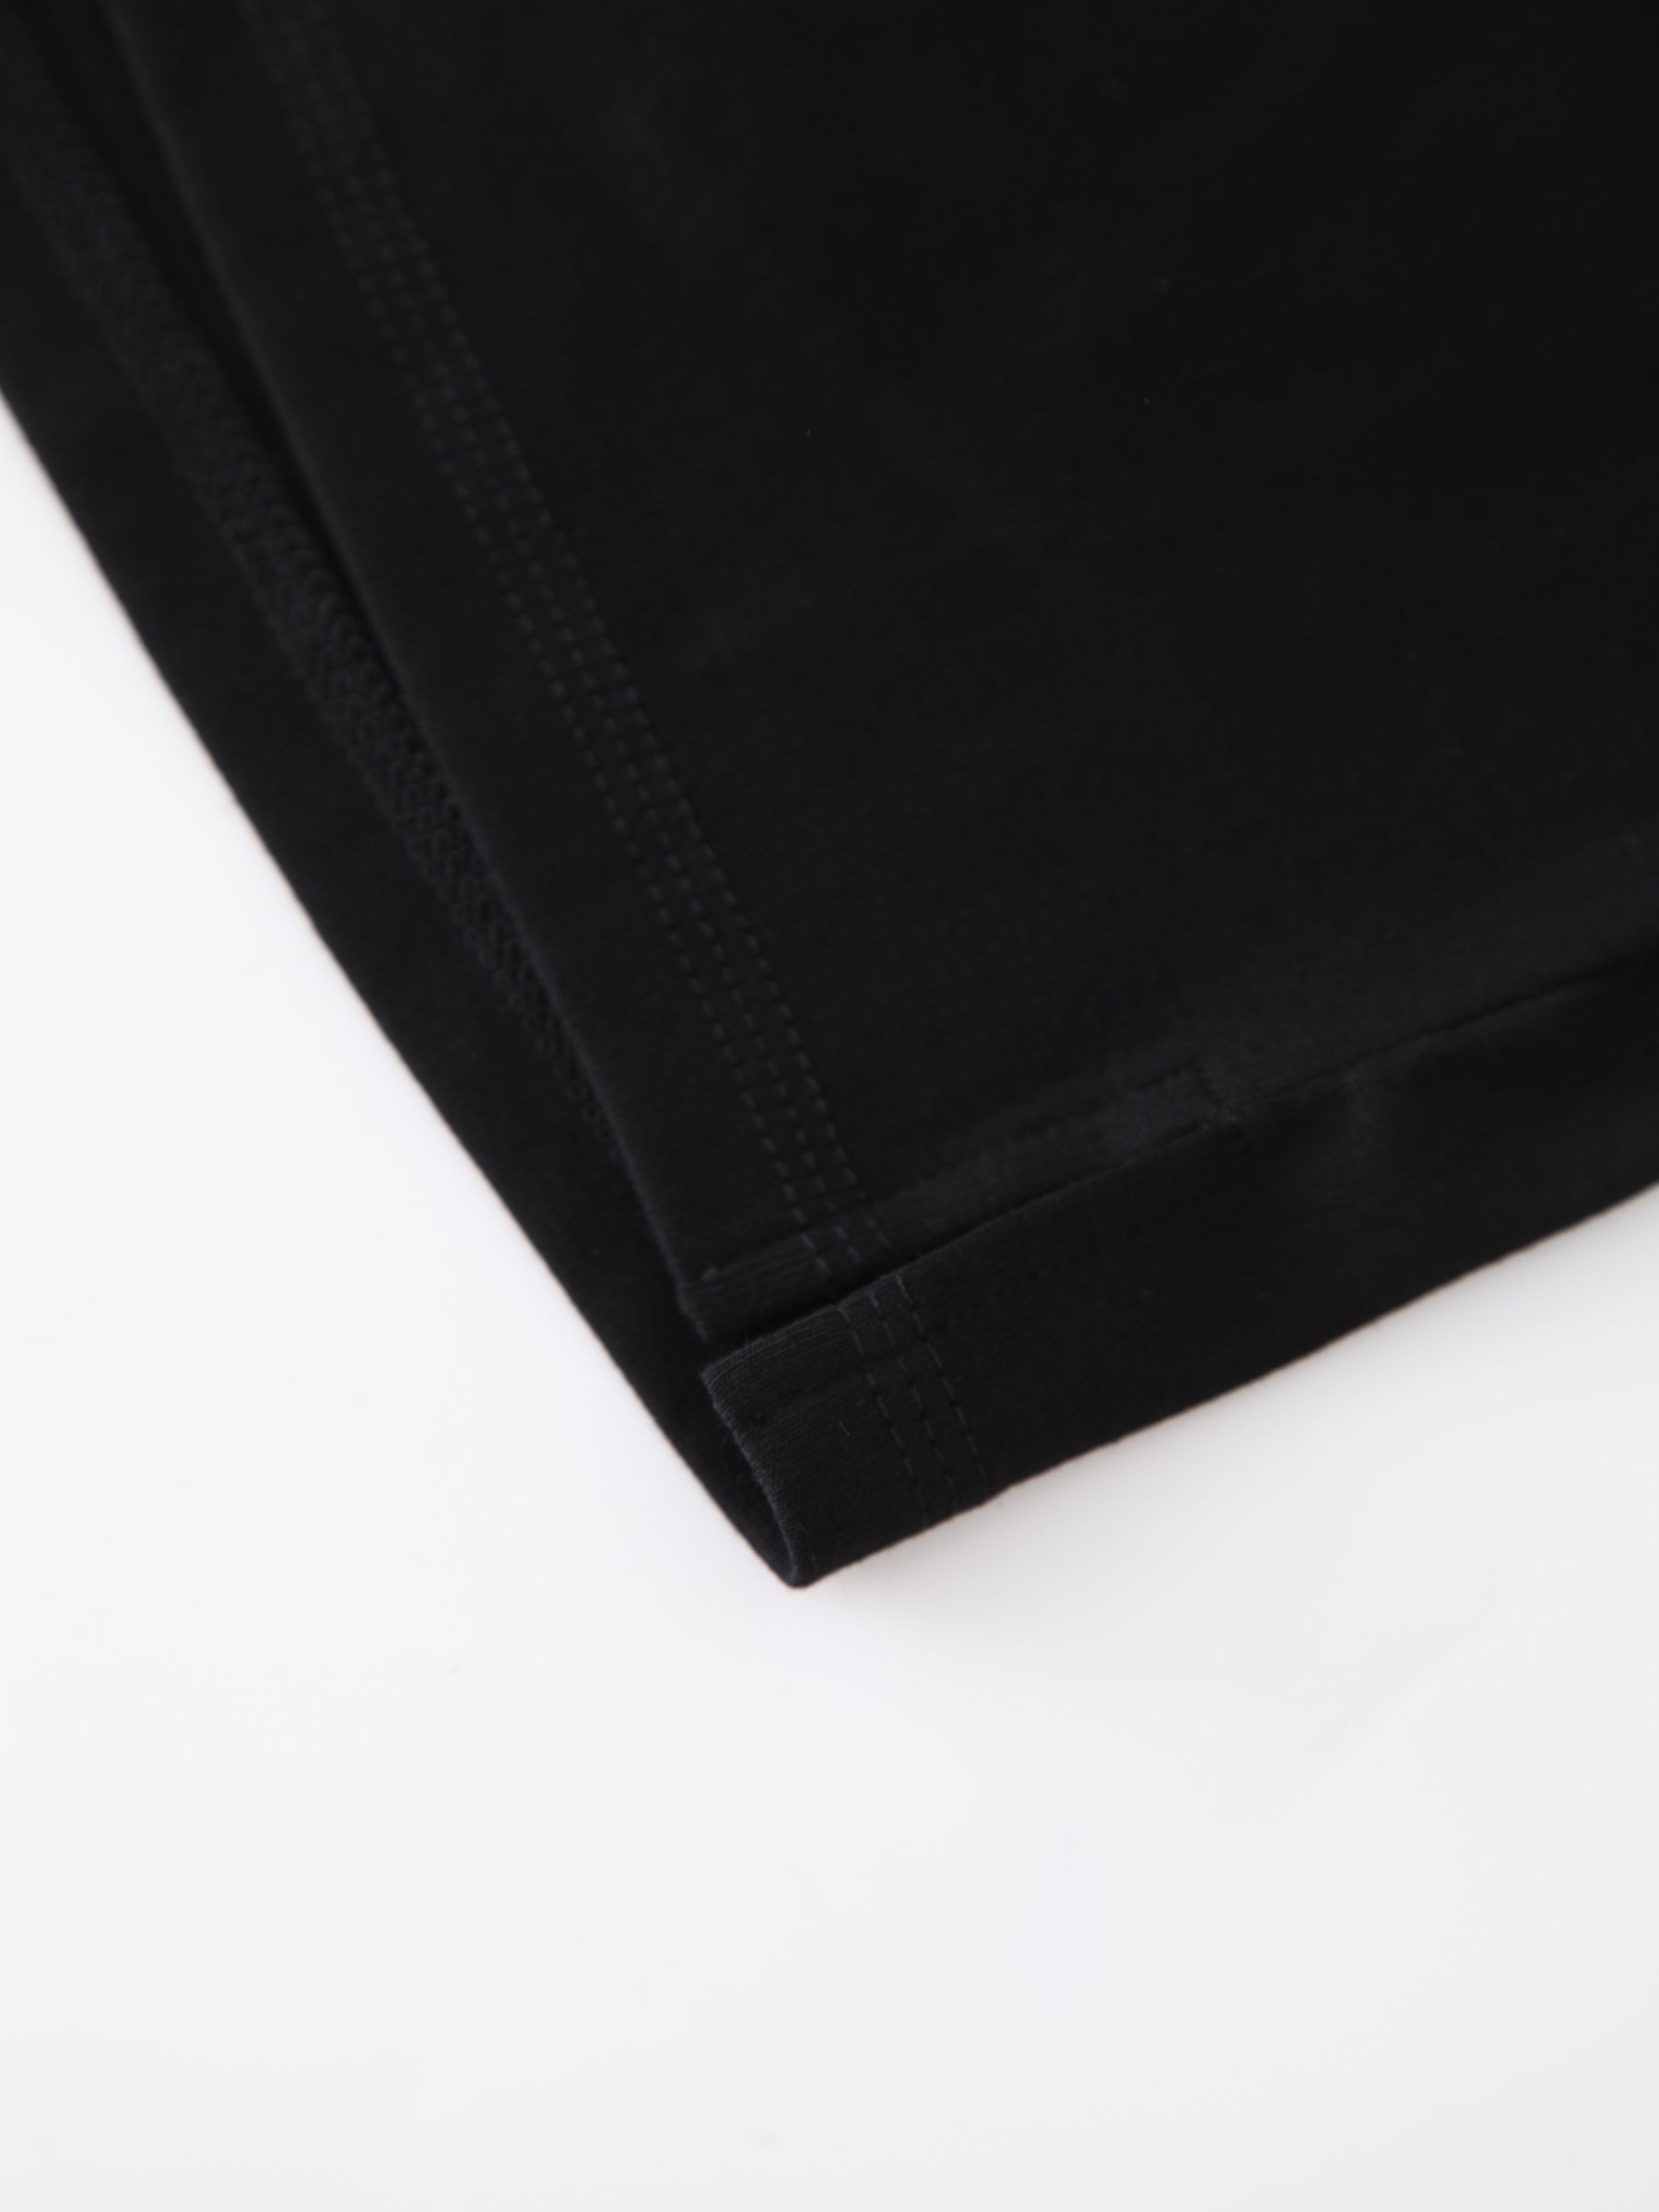 Basic T-Shirt Slip Dress-Black